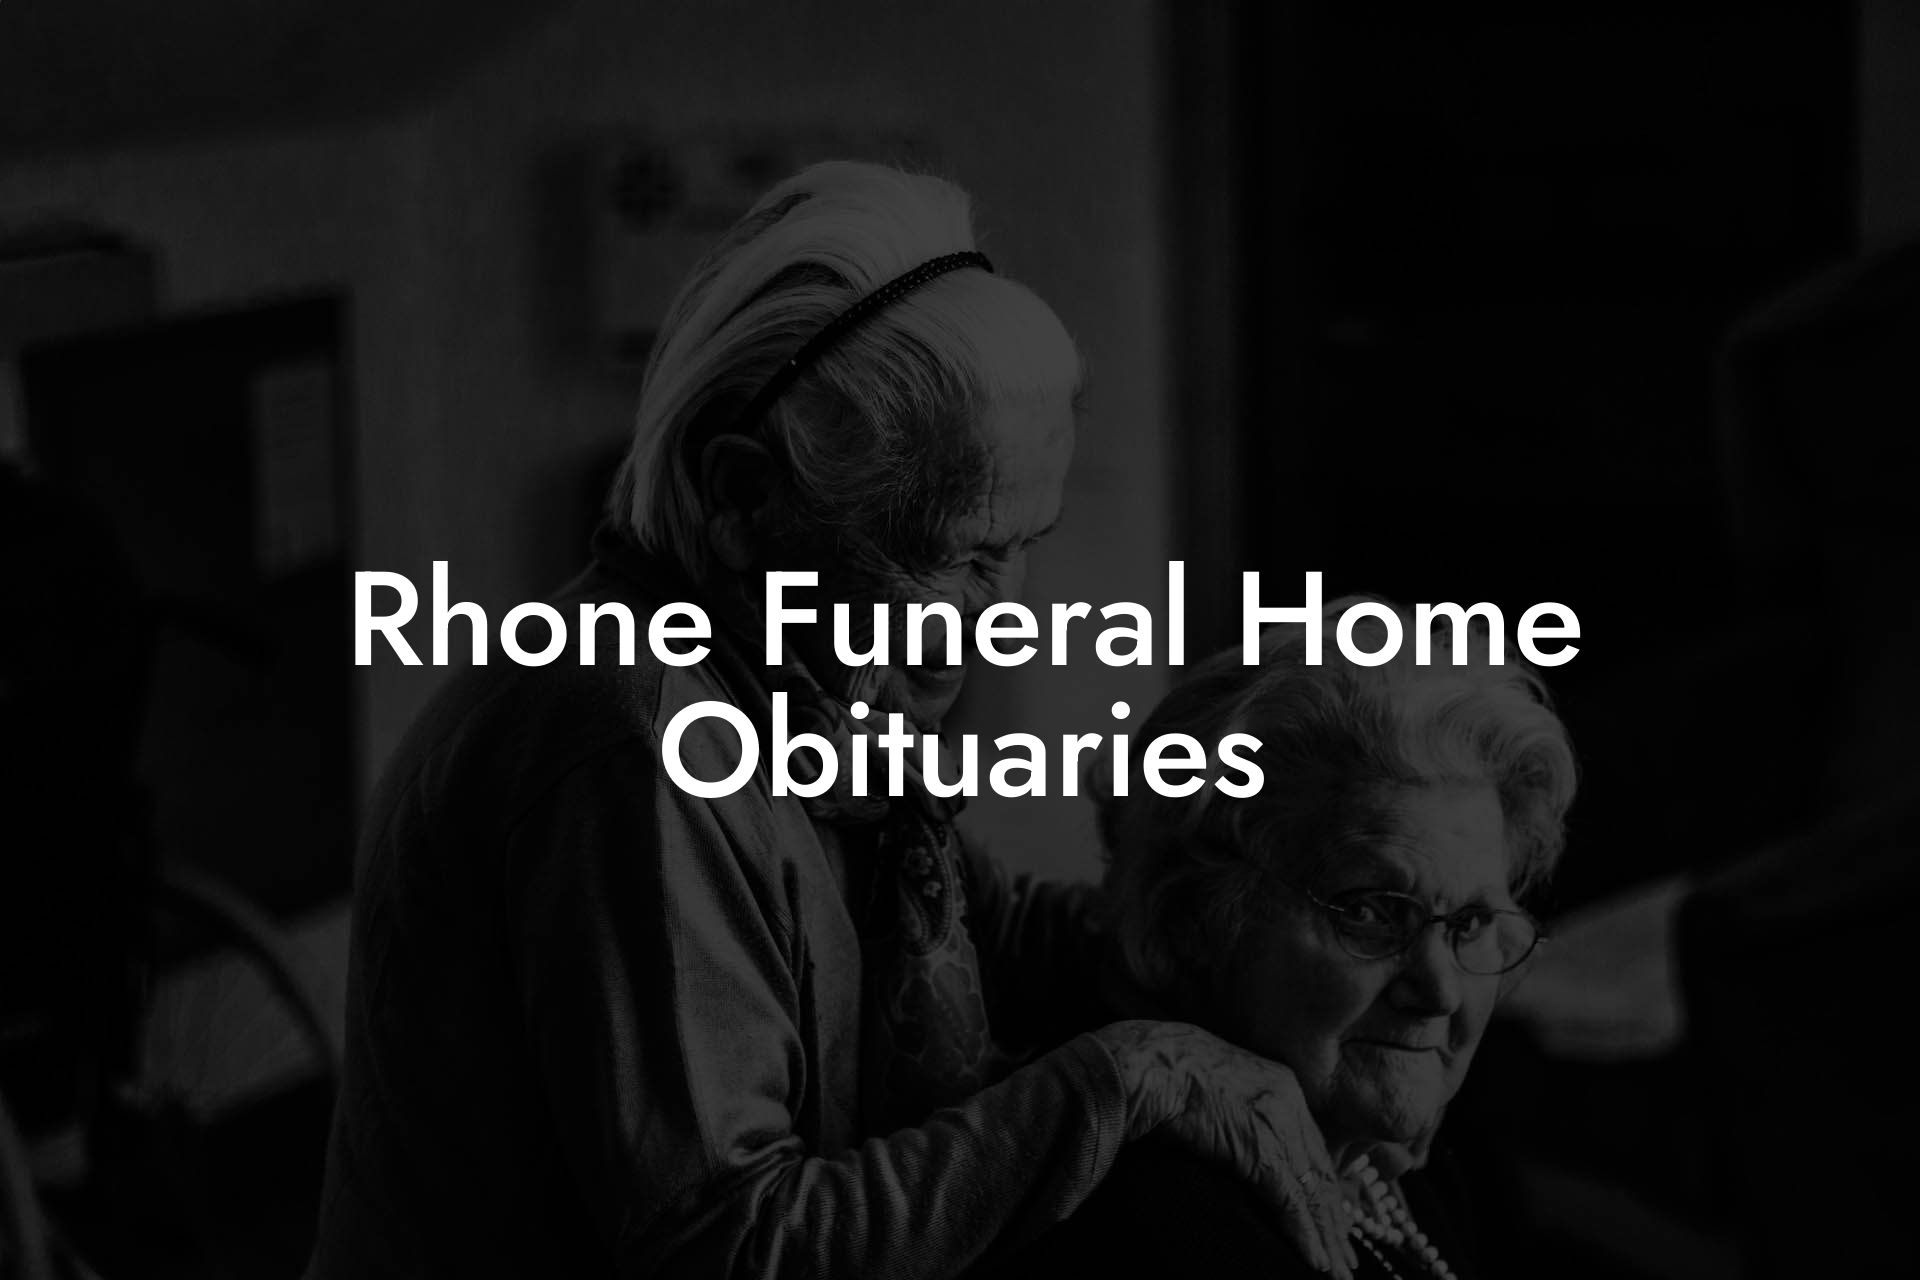 Rhone Funeral Home Obituaries